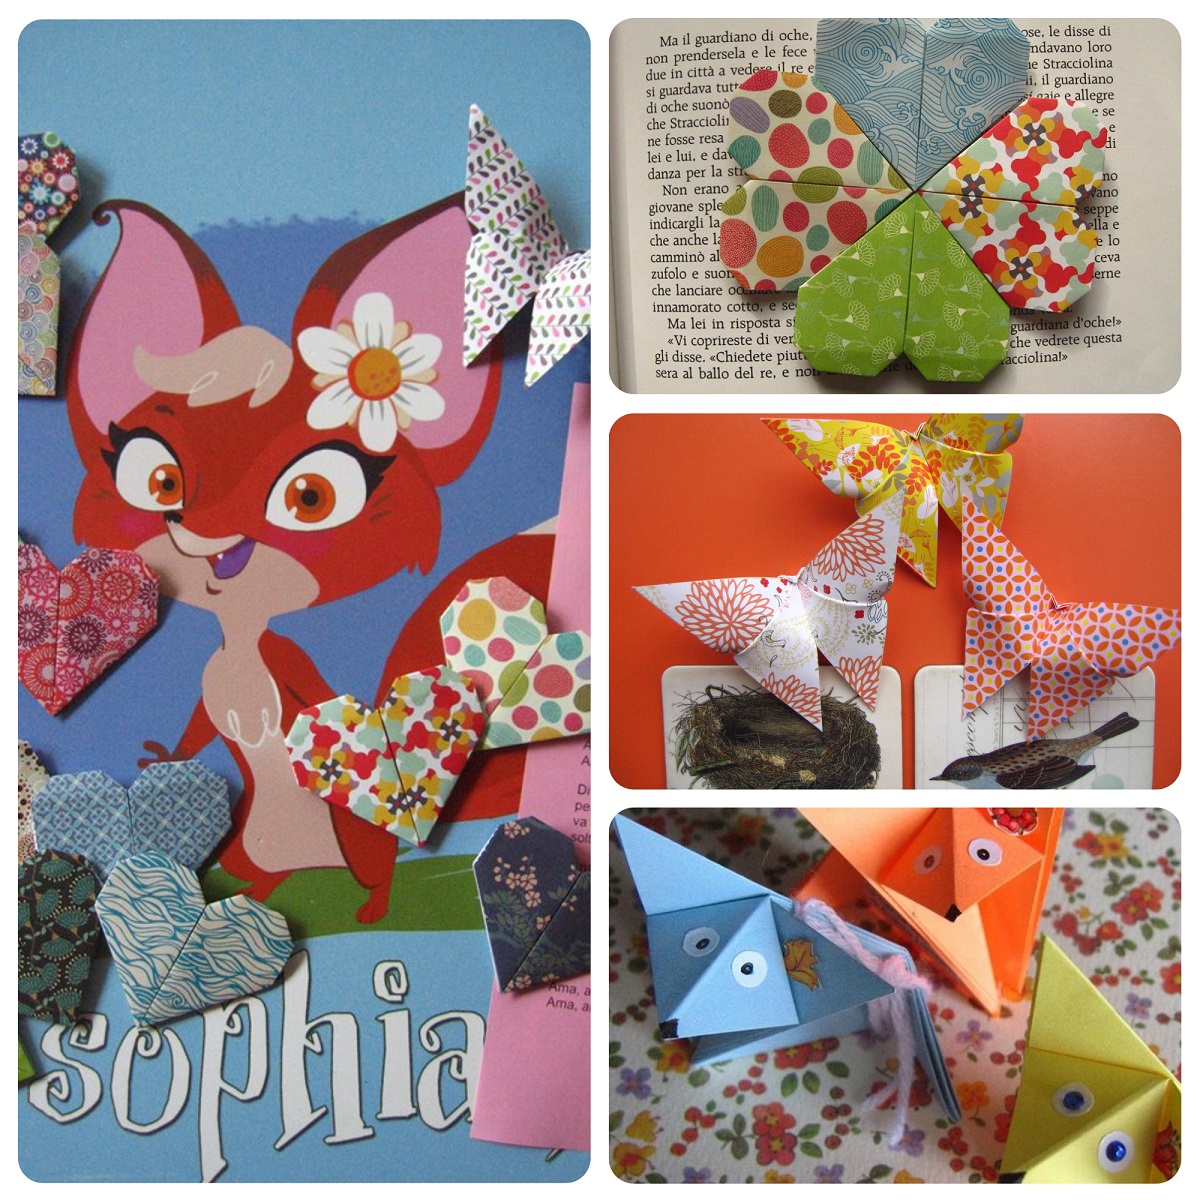 Gli origami filosofici de La volpe Sophia sito